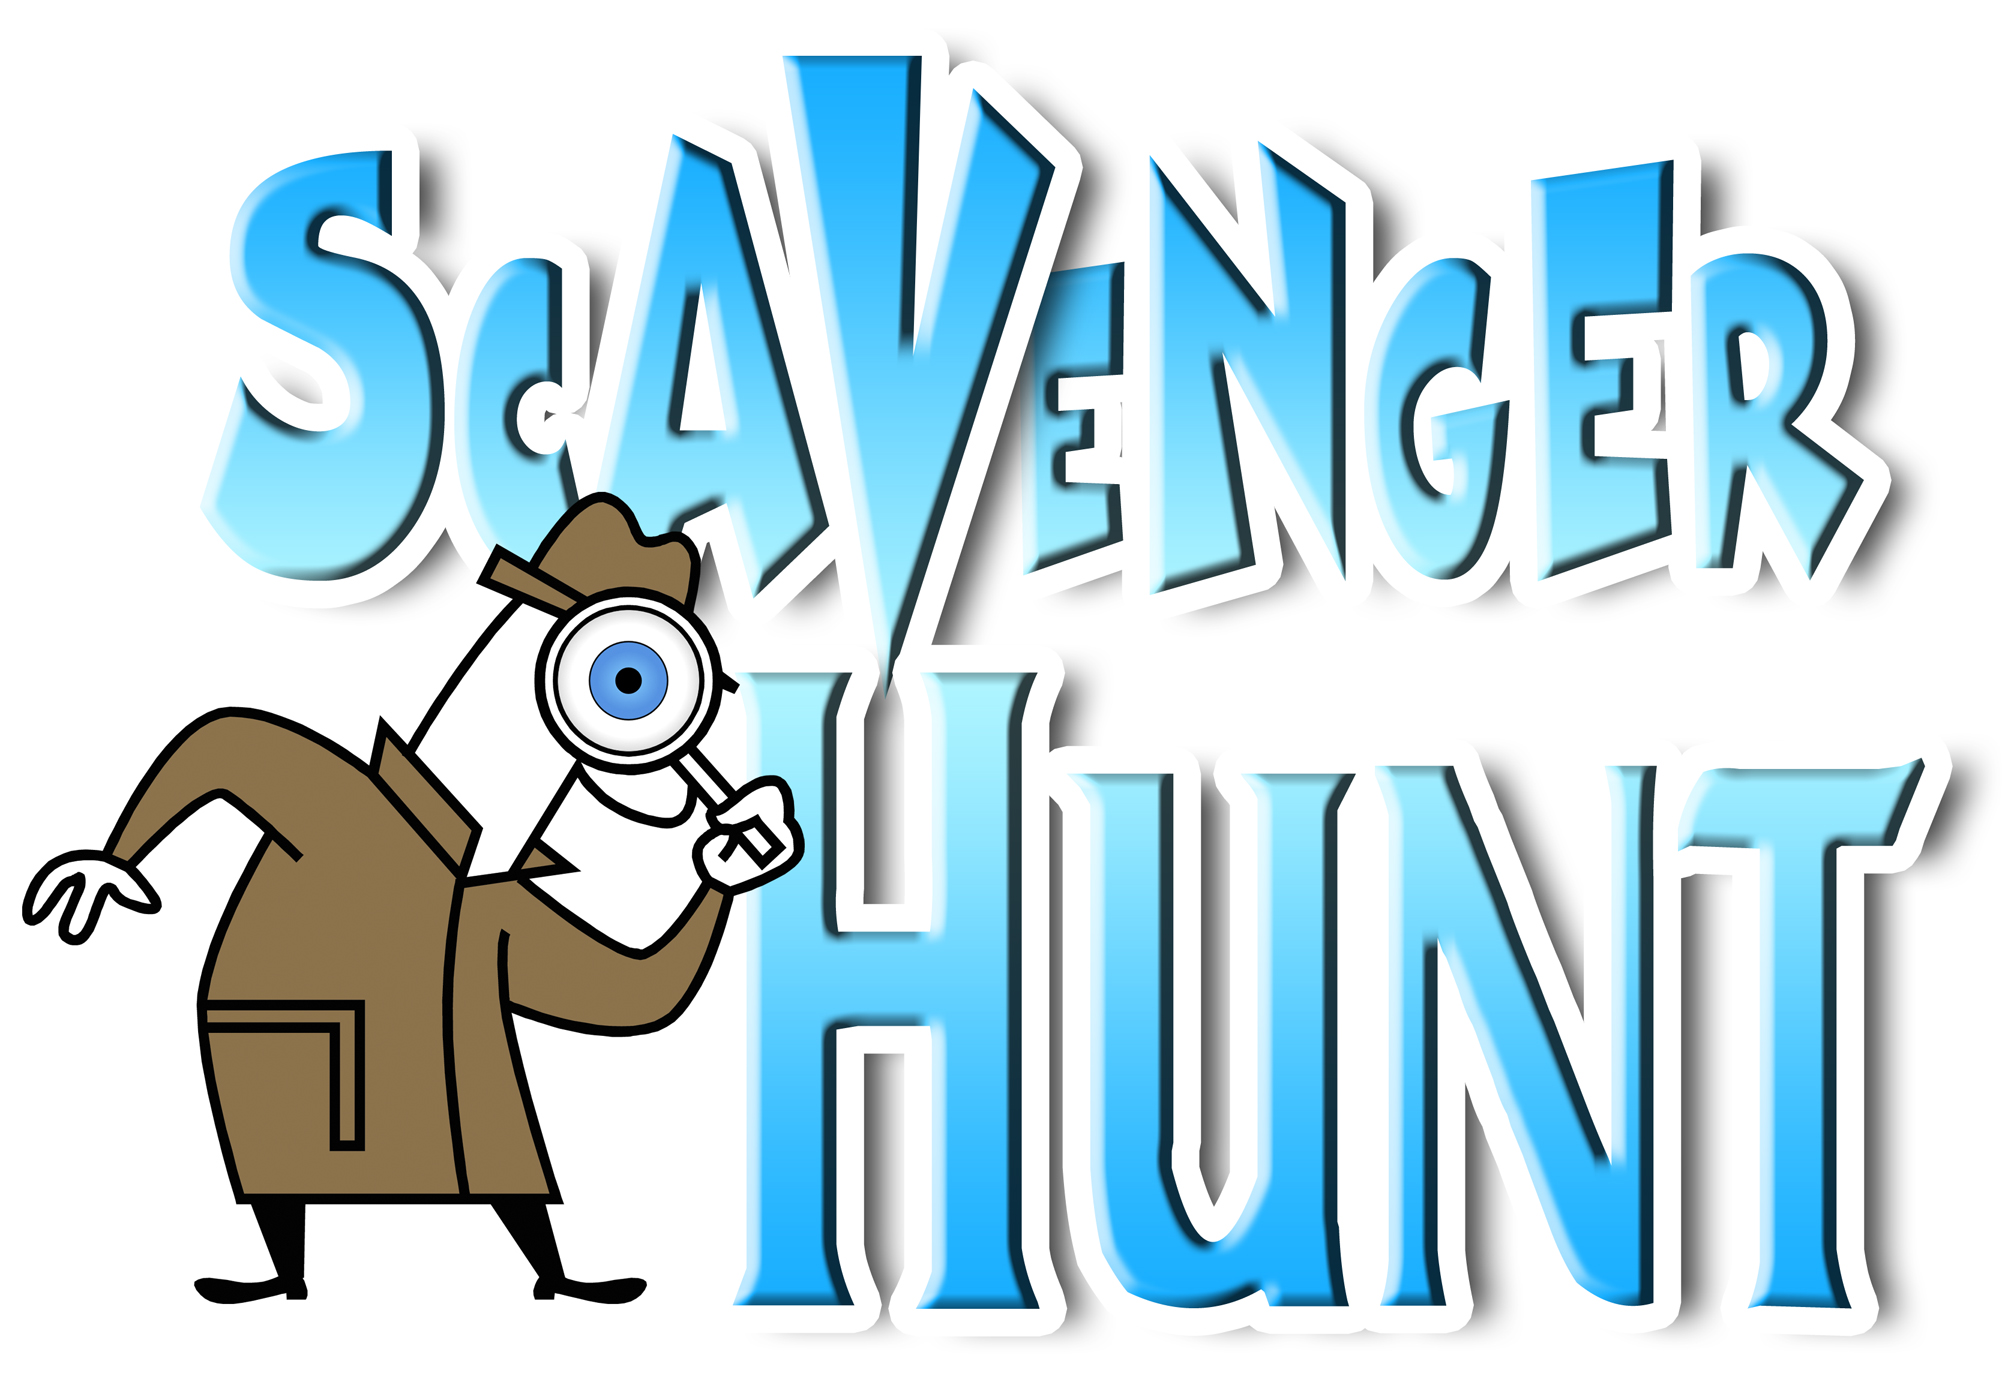 Scavenger Hunt Clip Art. for a Scavenger Hunt?